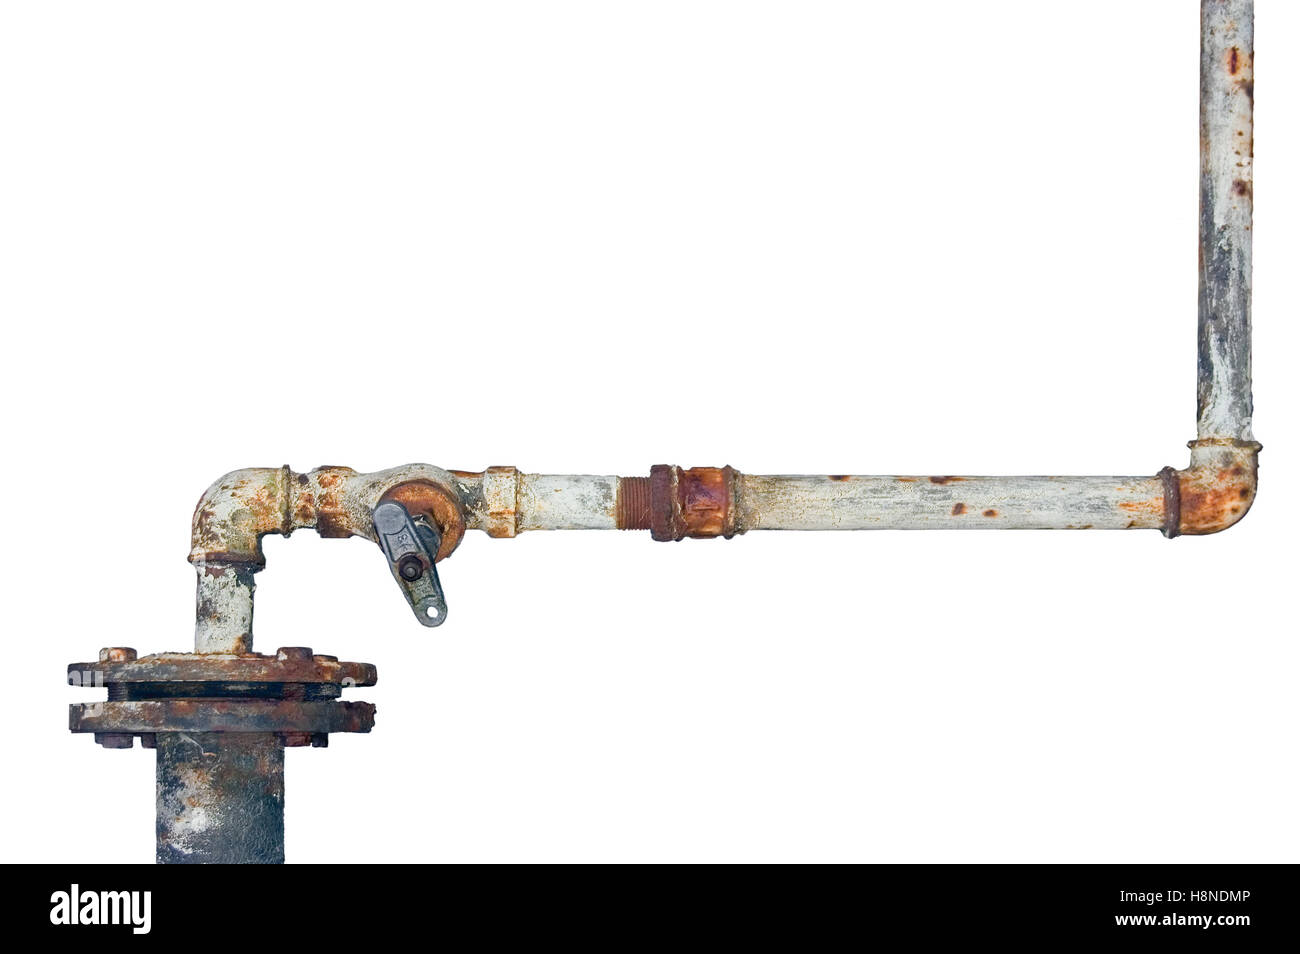 Old rusty, tuyaux de fer patiné rouille grunge isolés et pipeline connexion plomberie joints, raccords robinet industriel Banque D'Images